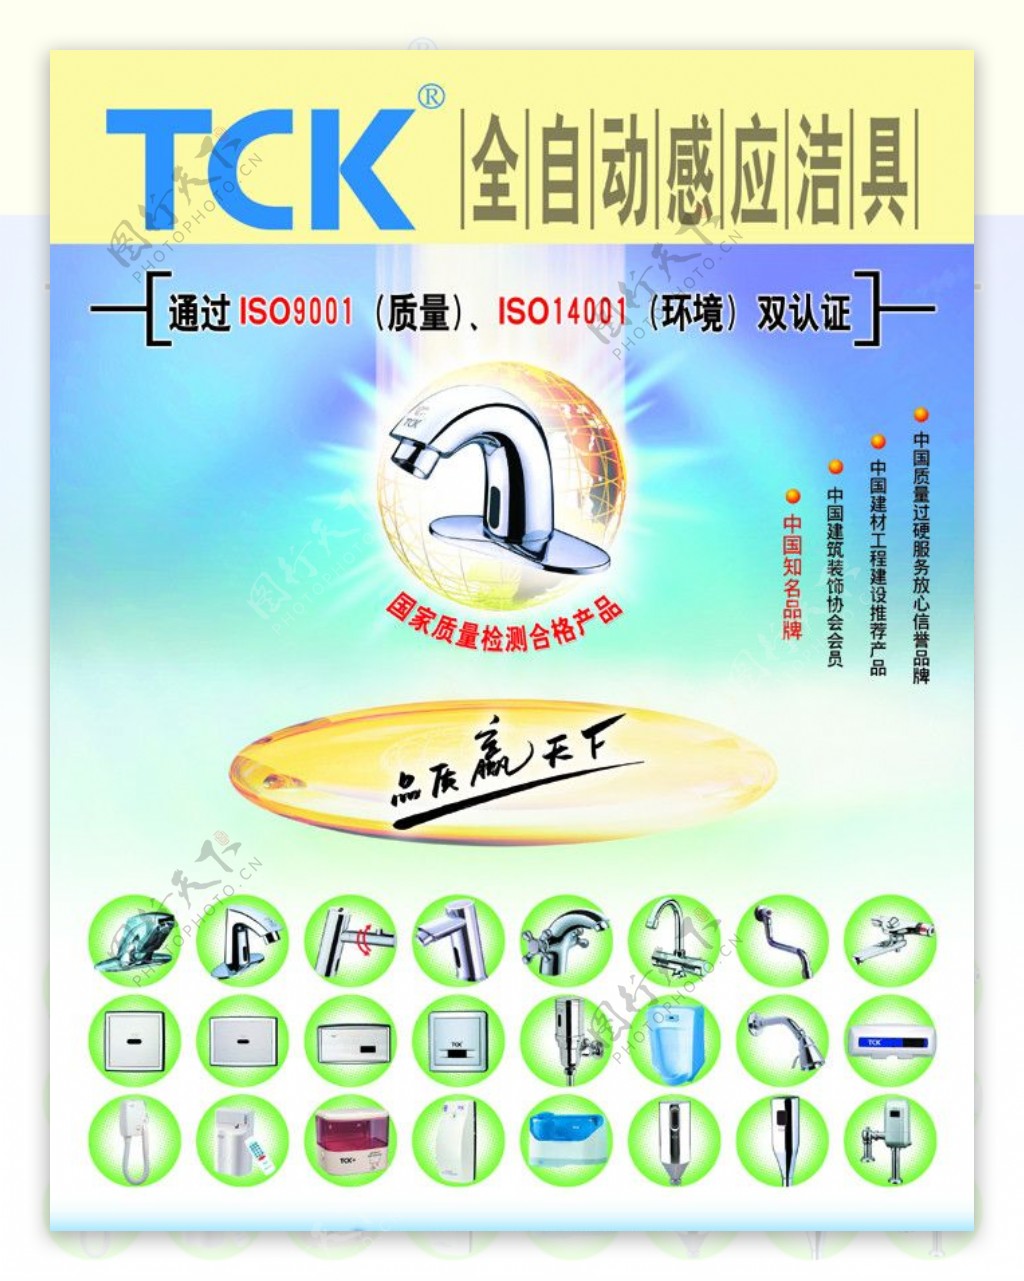 TCK全自动感应洁具图片